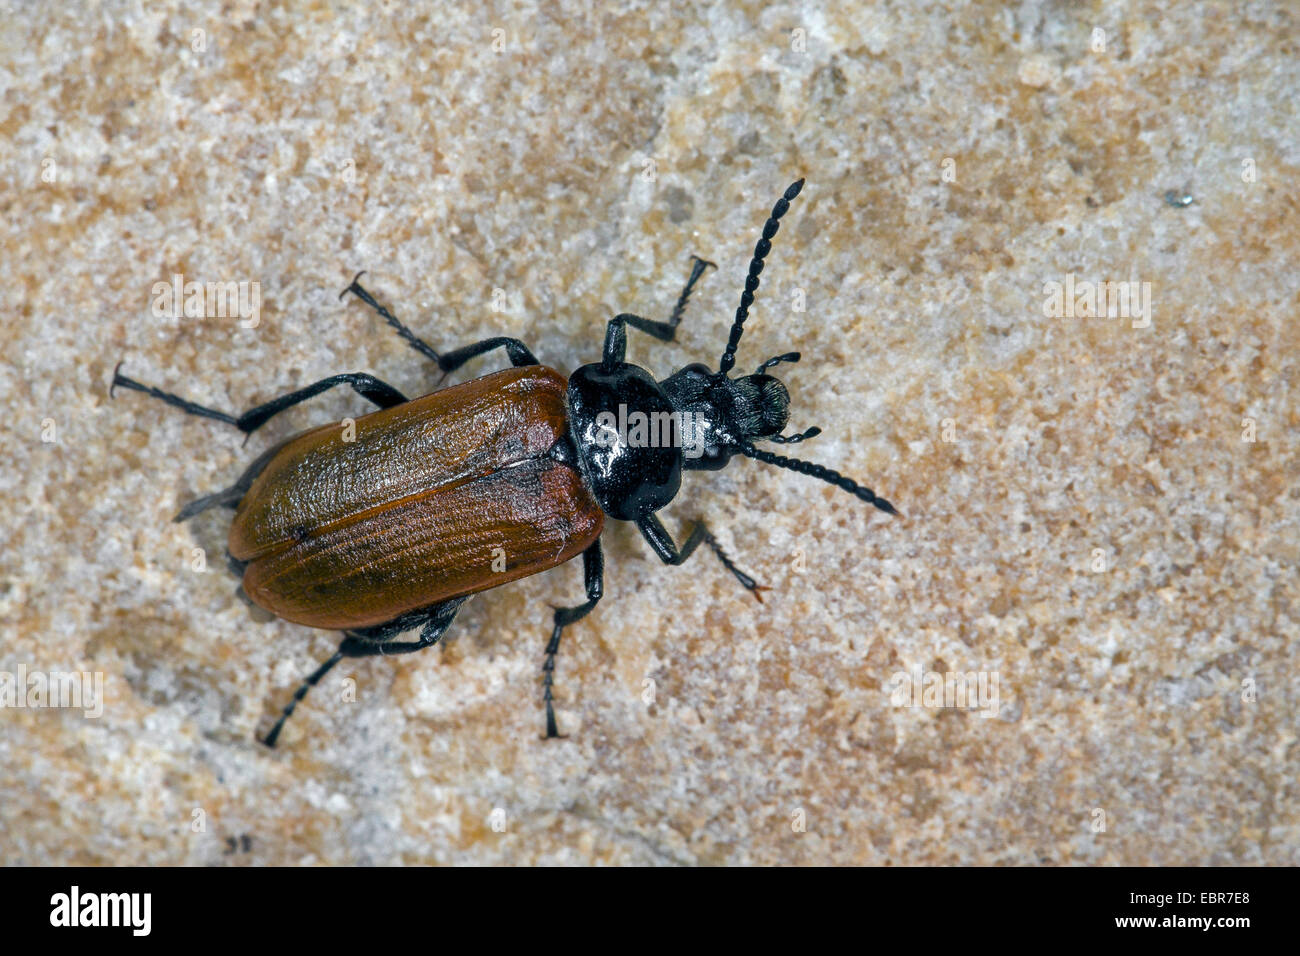 Kamm-krallte Käfer, krallte Kamm Käfer (Omophlus Lepturoides, Odontomophlus Lepturoides), auf einem Stein, Deutschland Stockfoto